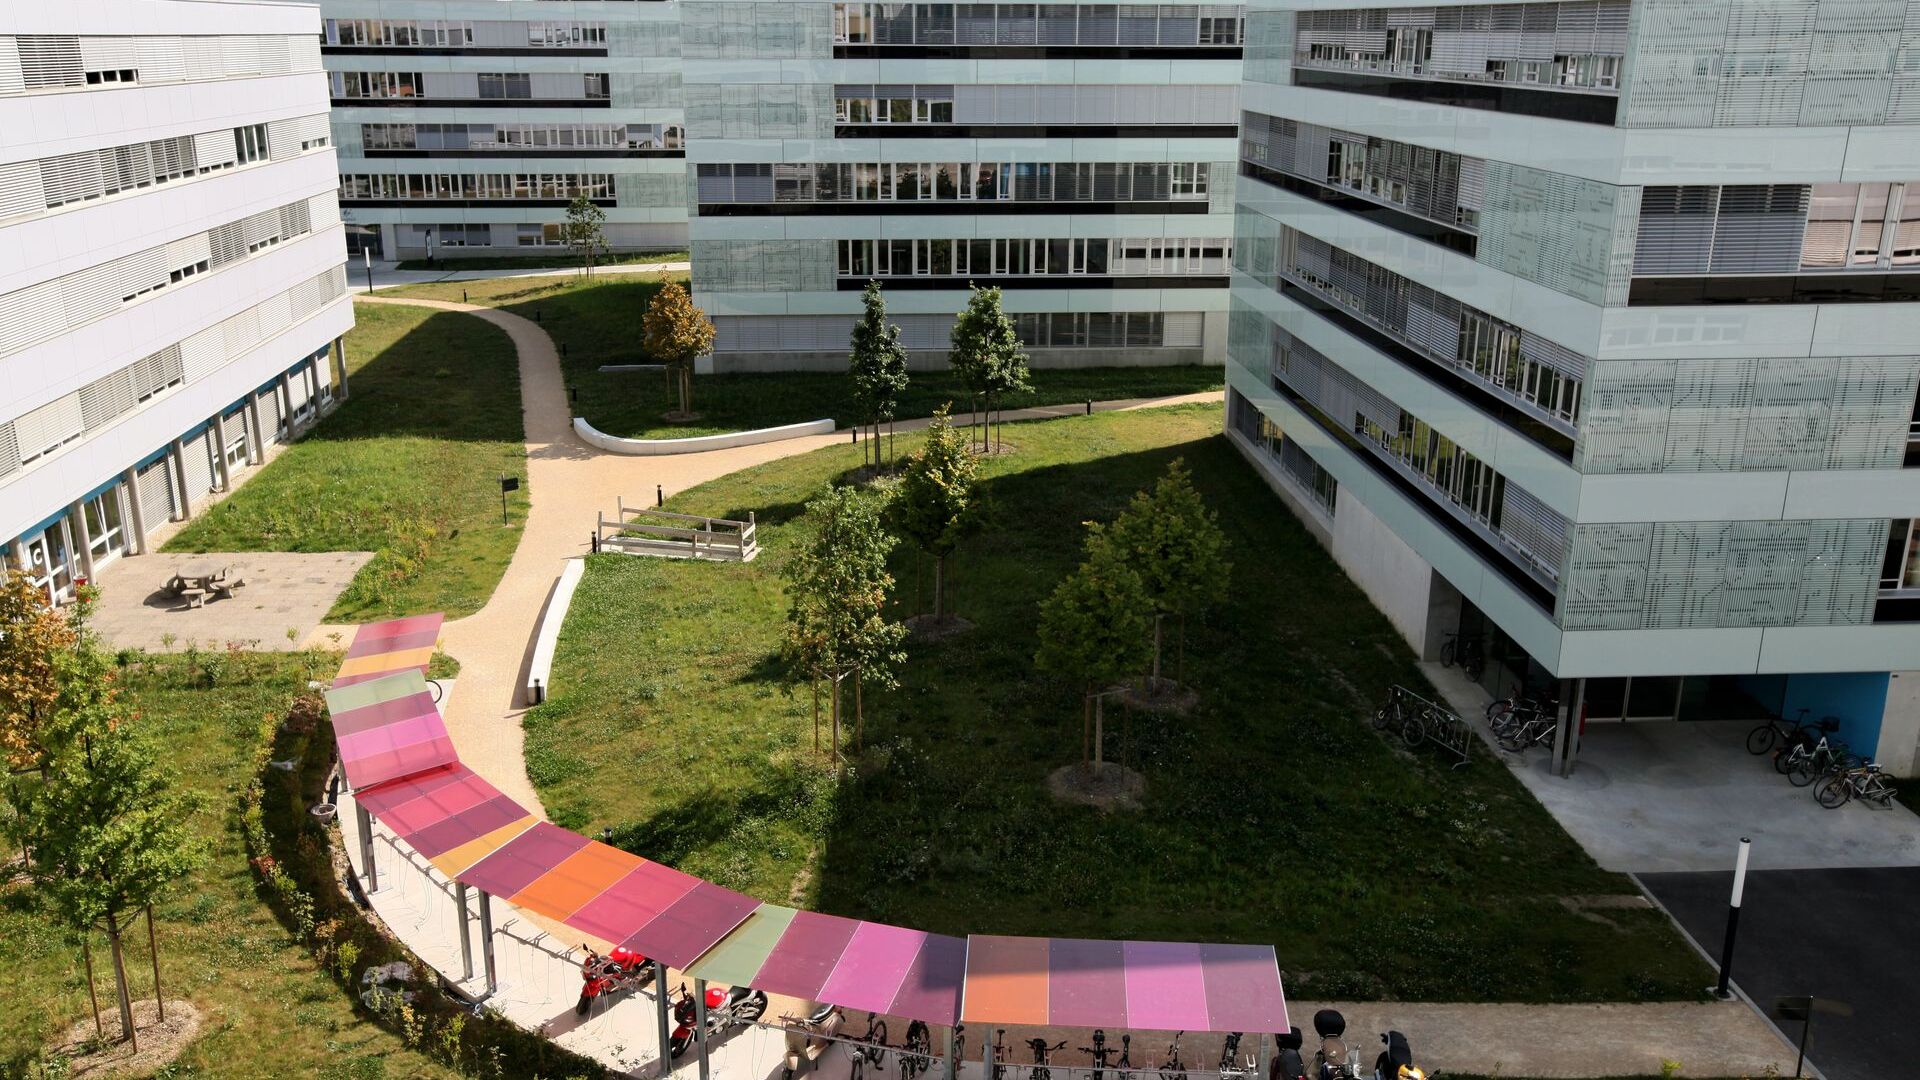 L'EPFL Innovation Park è l'incubatore d'impresa dedicato alle start-up studentesche creato nell’ambito del Politecnico Federale di Losanna: dal 1997, sono state create in media ogni anno dodici start-up composte da studenti e docenti dell'EPFL, che nel 2013 hanno ricevuto un budget di 105 milioni di franchi svizzeri